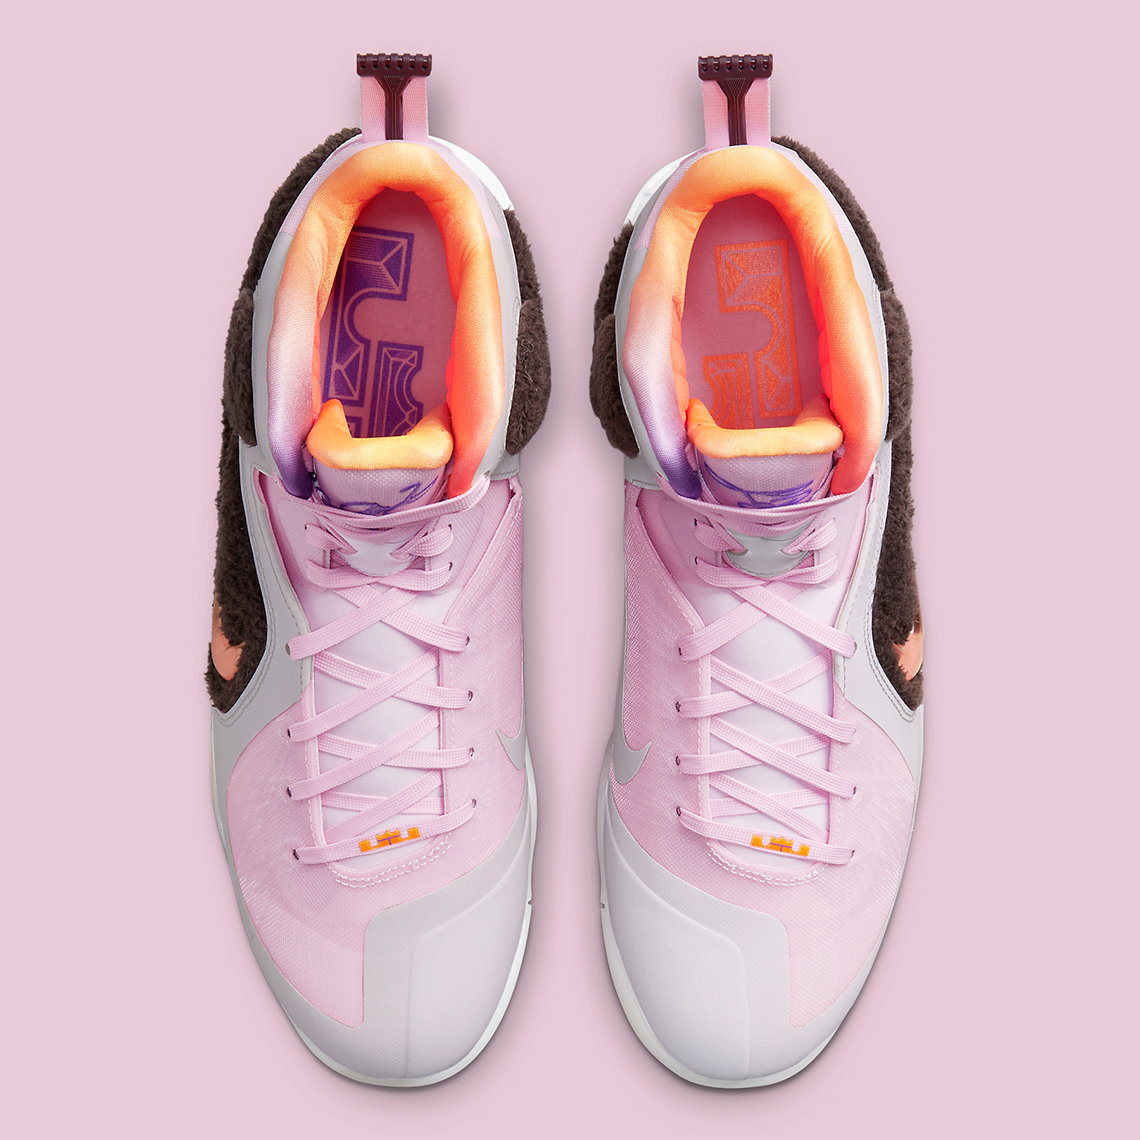 Nike LeBron 9 Regal Pink DJ3908 600 1